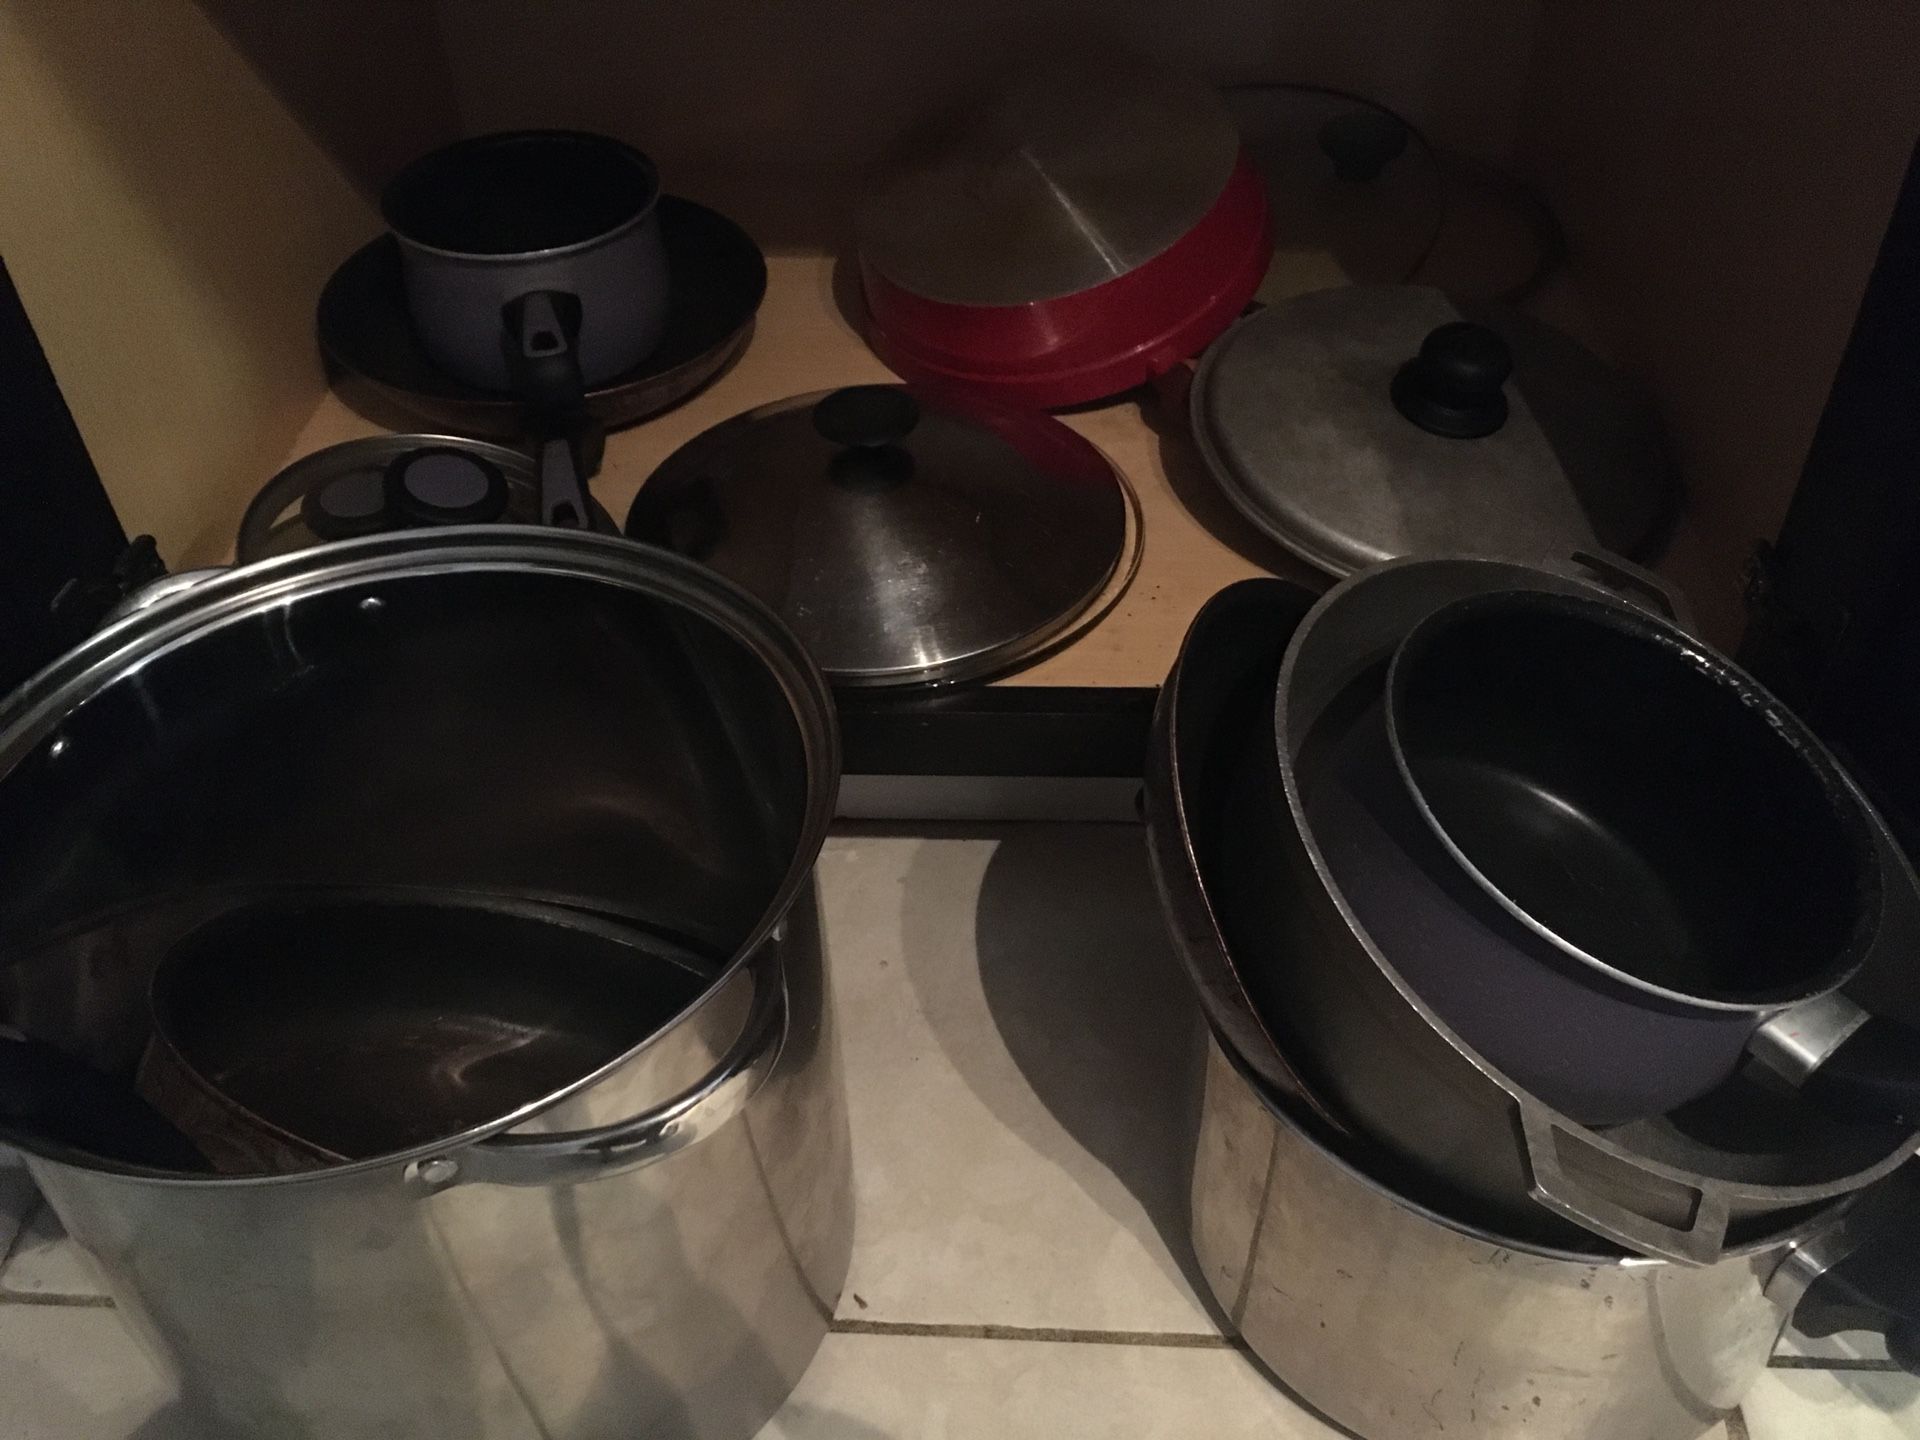 Pots pans and lids set